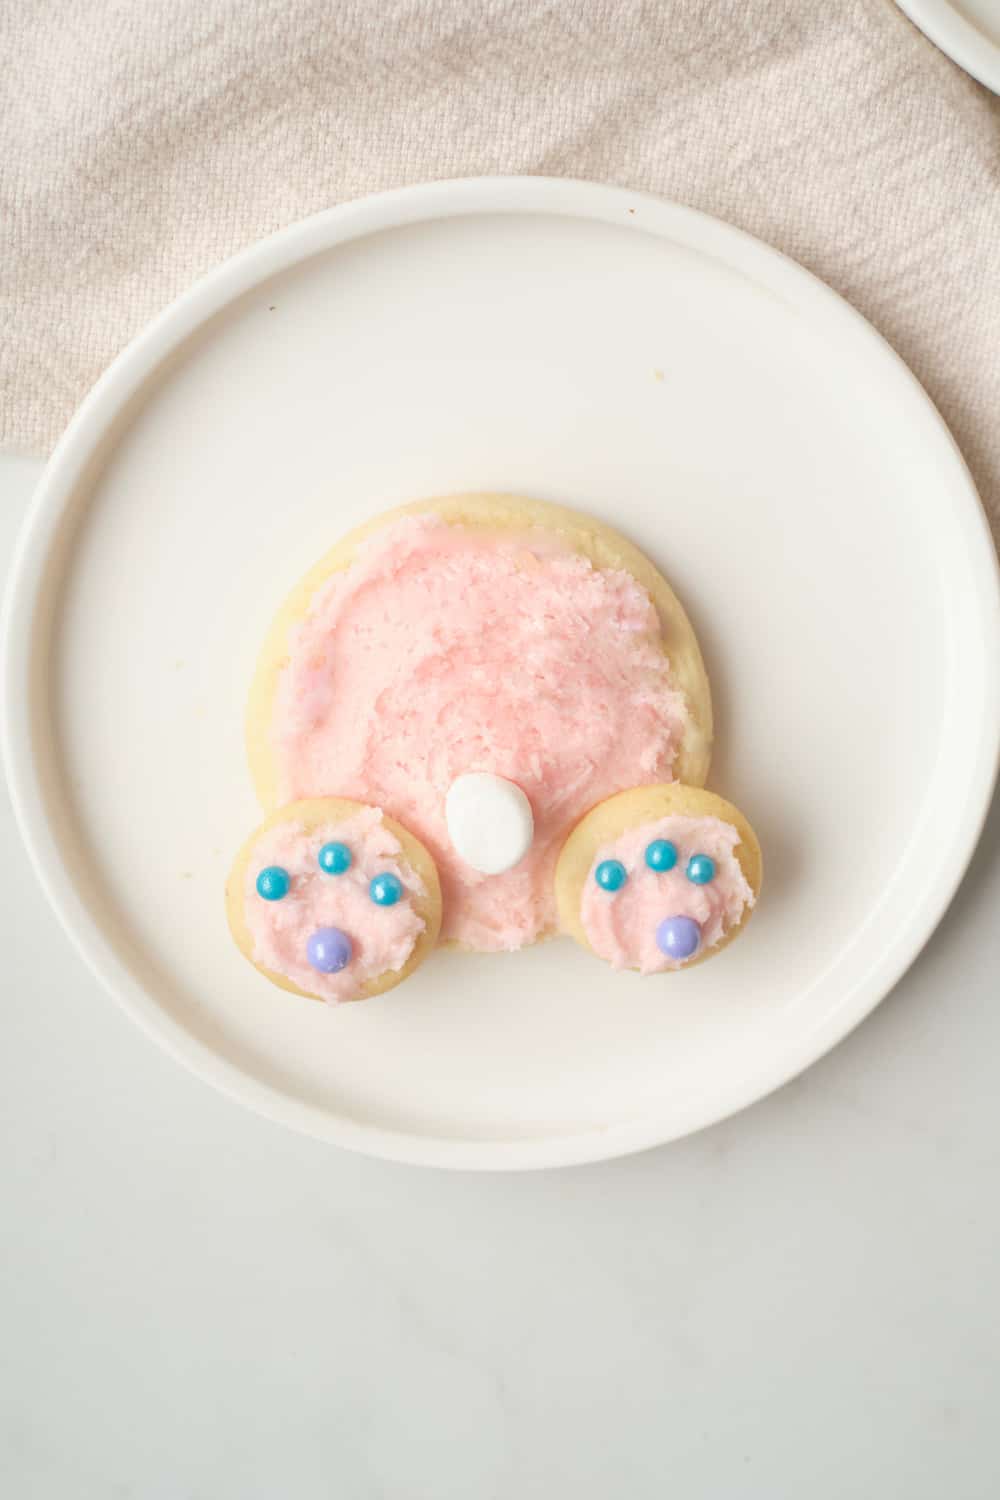 Bunny Butt Cookies